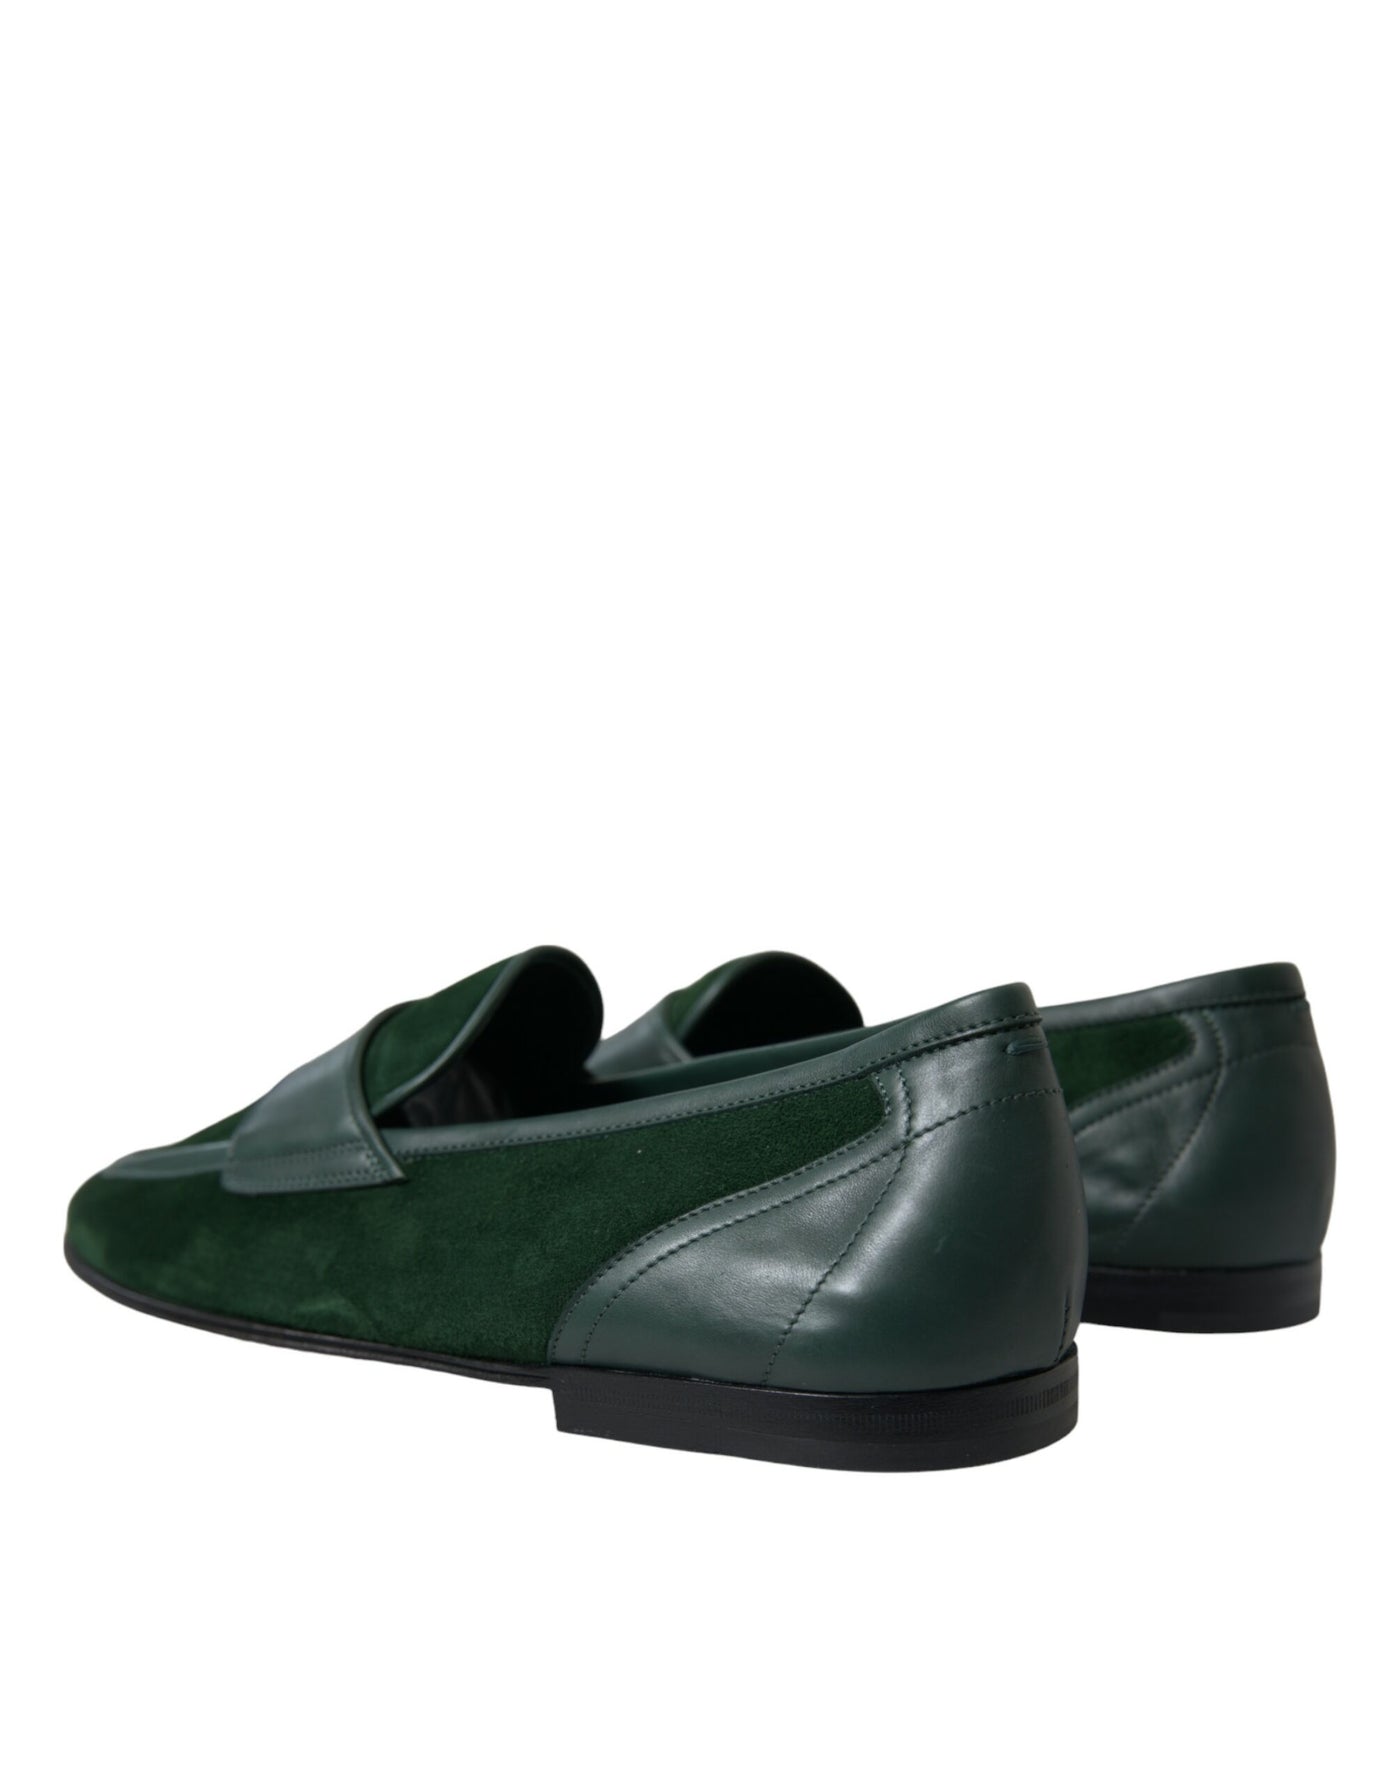 Dolce & Gabbana Green Velvet Slip On Men Loafer Dress Shoes